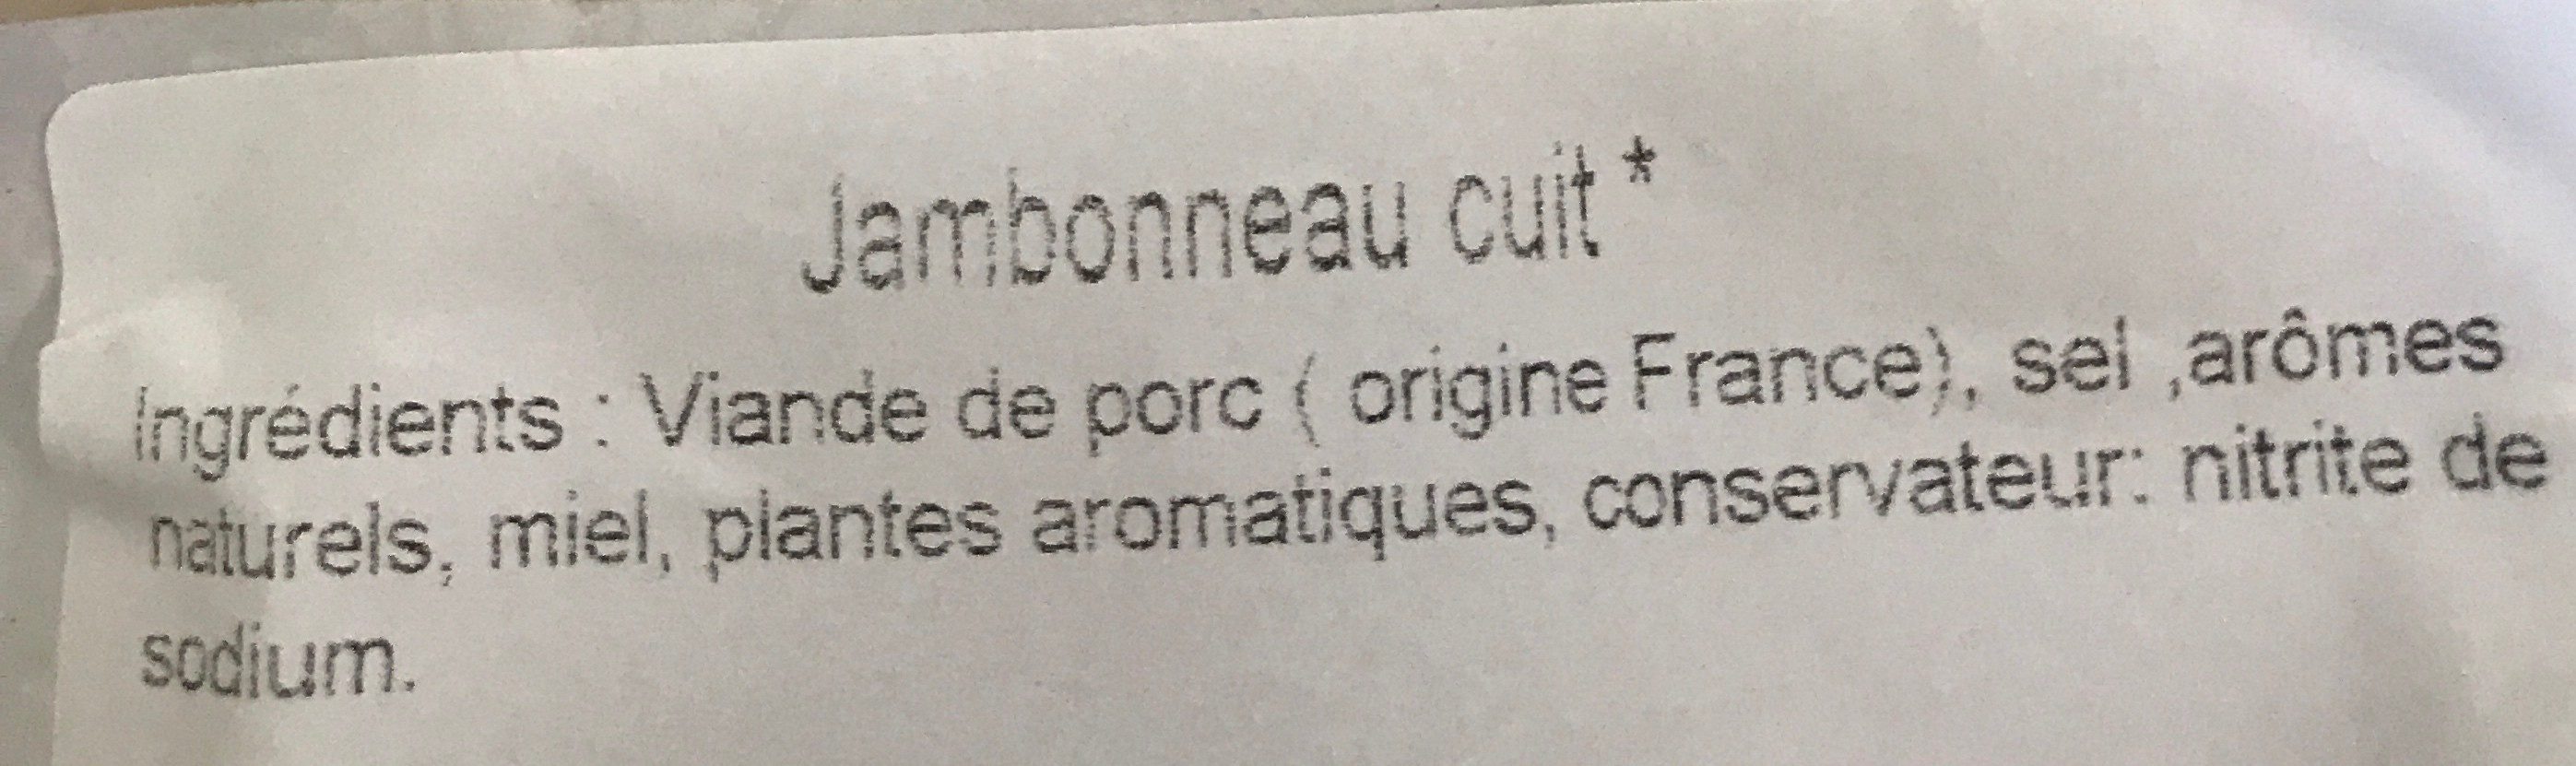 Jambonneau cuit petit - Ingredients - fr